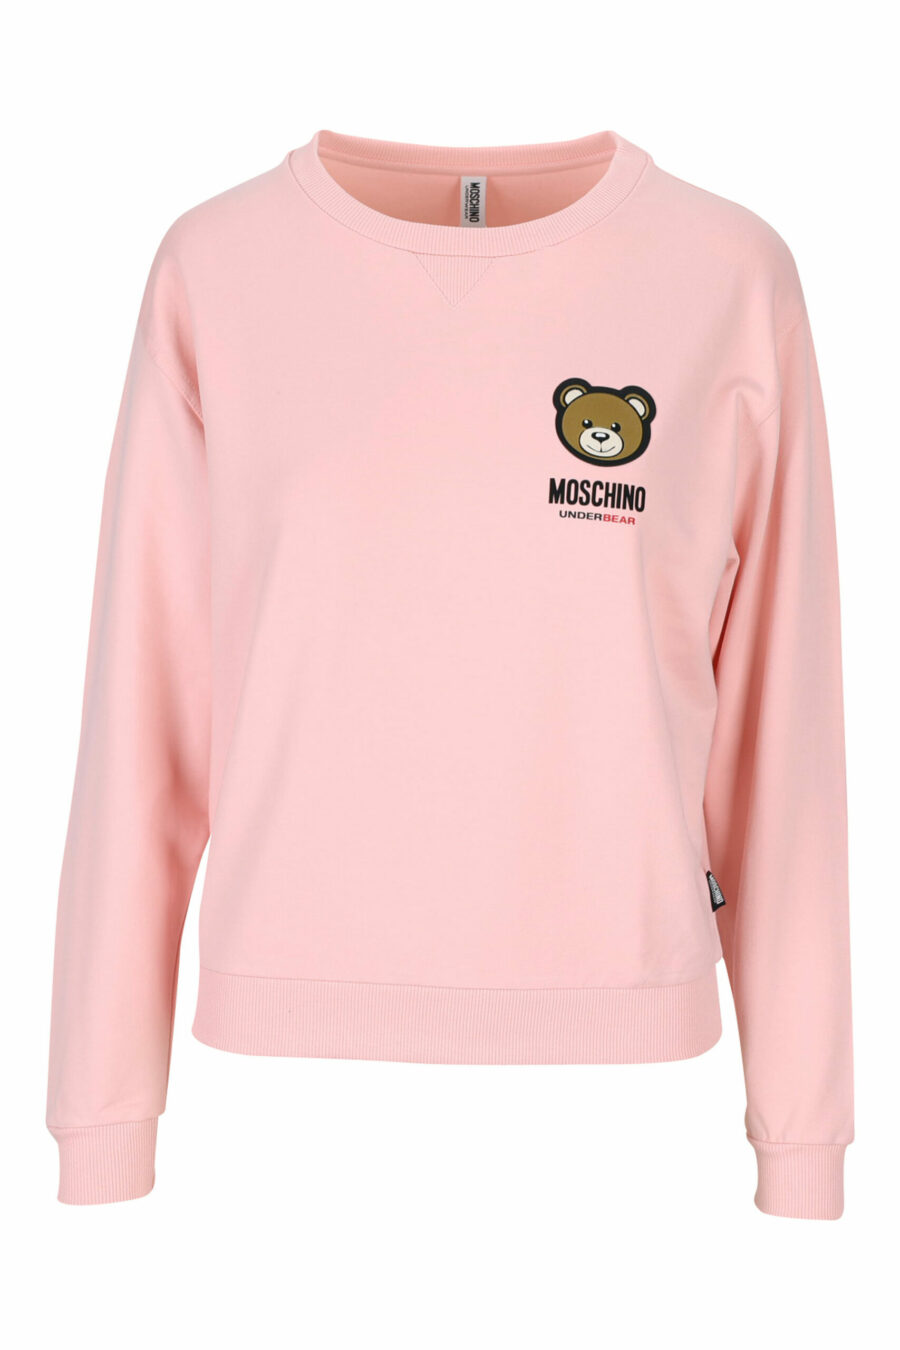 Camisola cor-de-rosa com logótipo de urso "underbear" - 889316618365 scaled